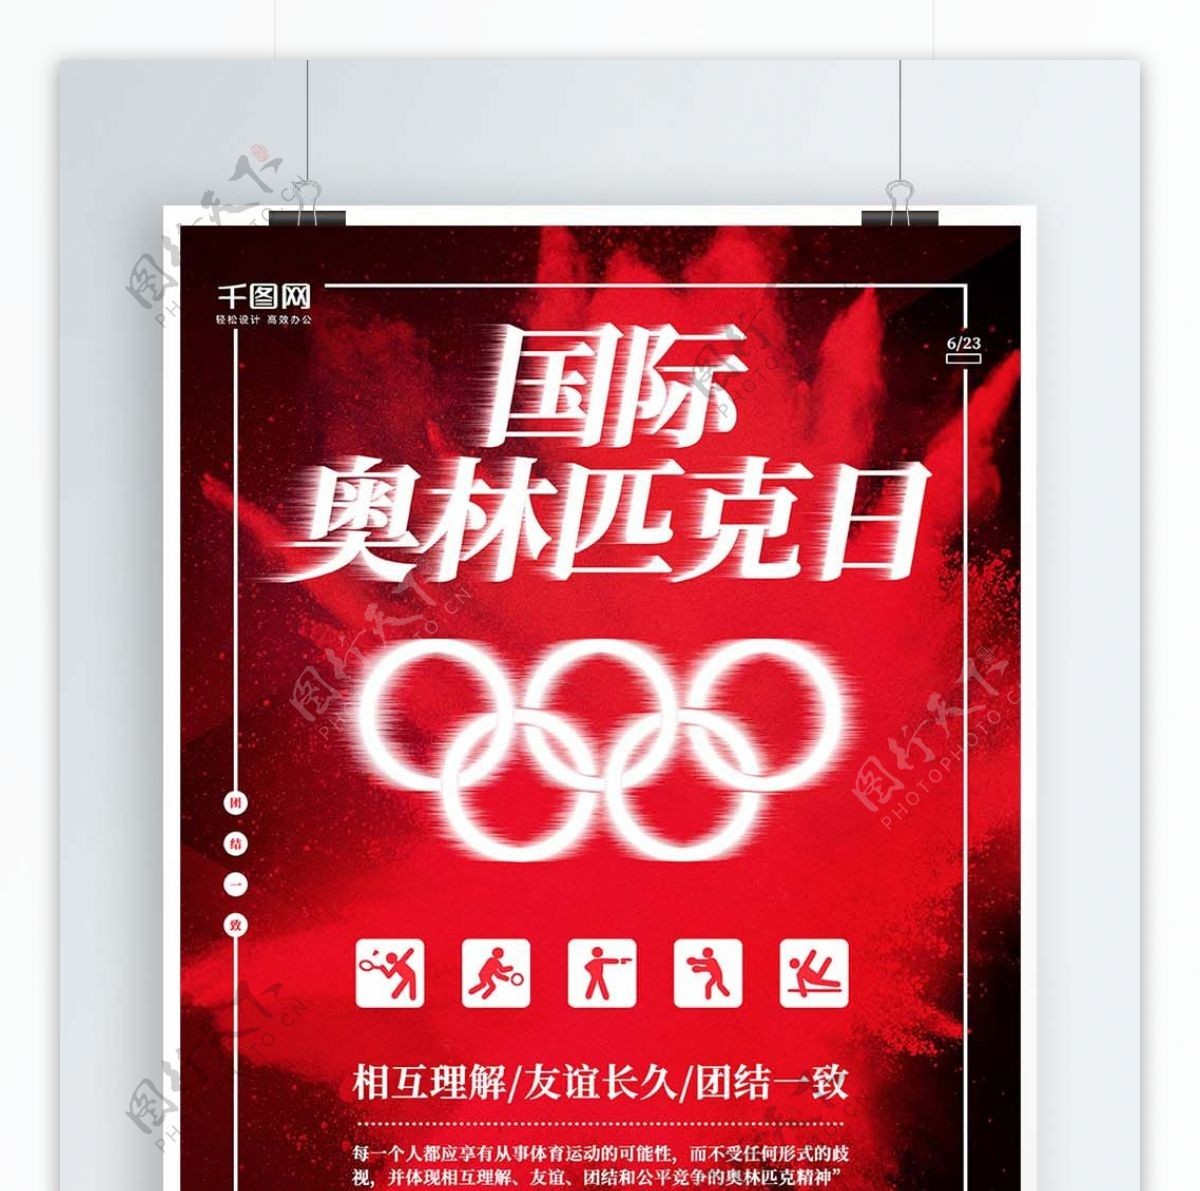 红色奥林匹克日海报